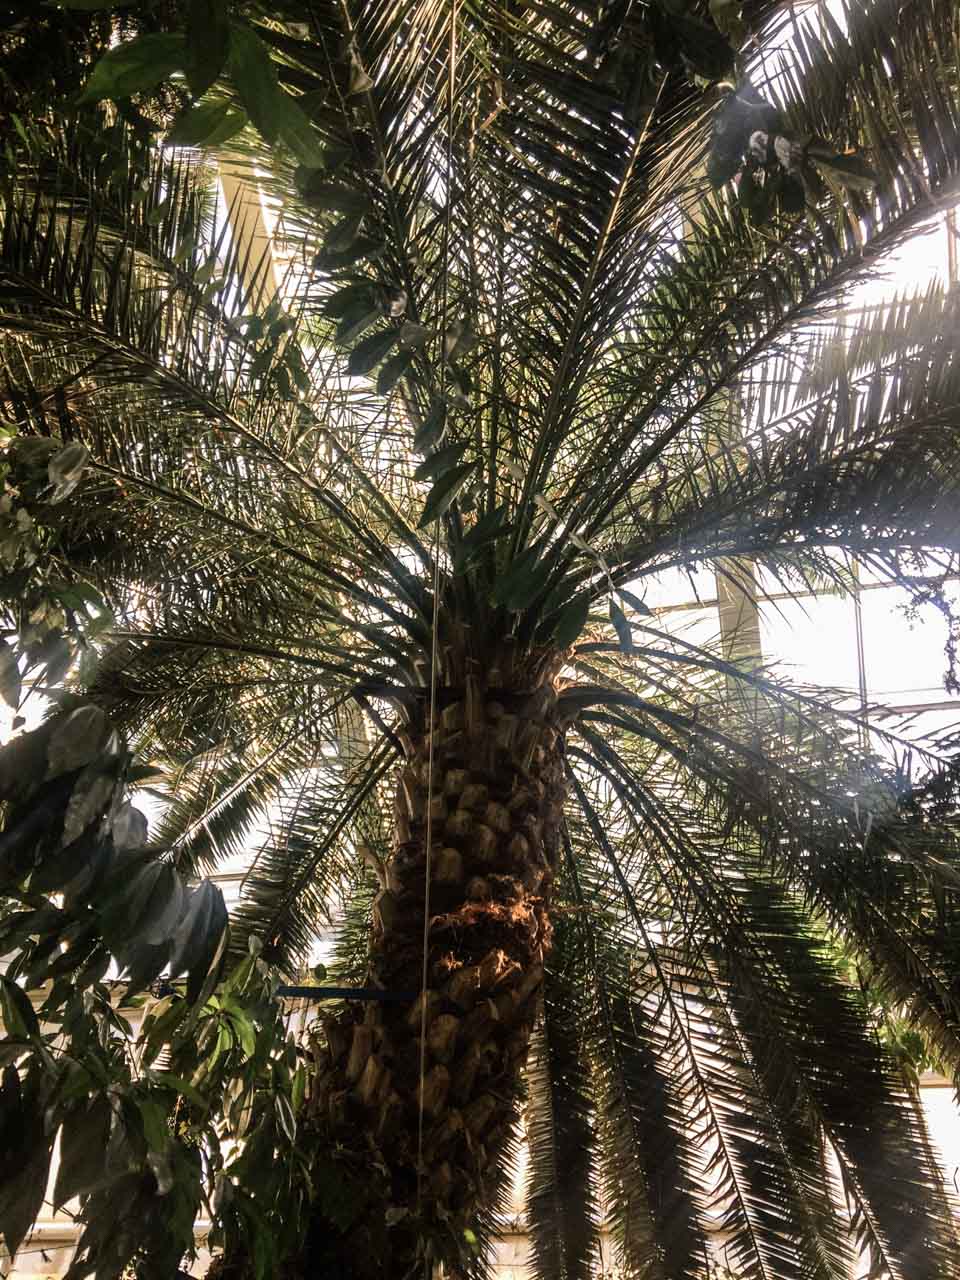 A palm tree inside a palm house